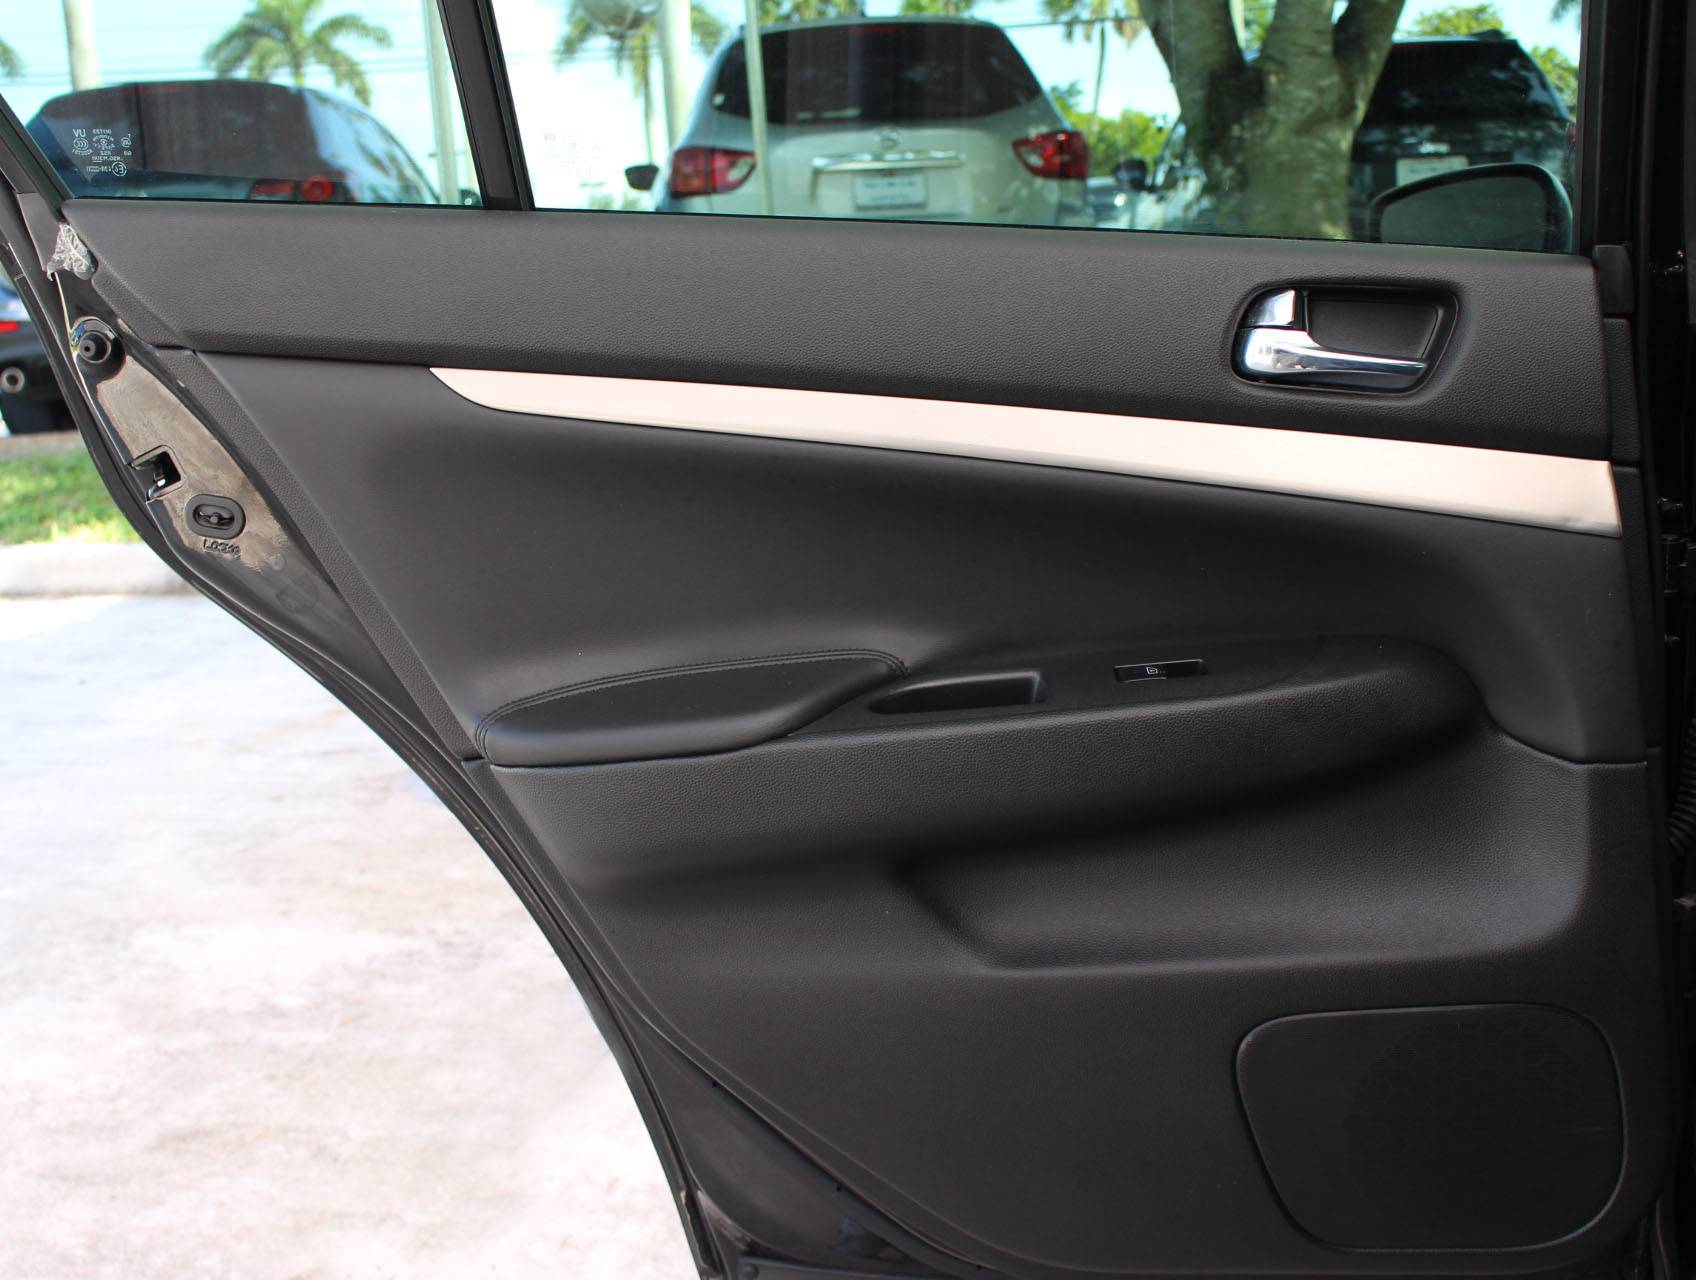 Florida Fine Cars - Used INFINITI Q40 2015 MARGATE Premium